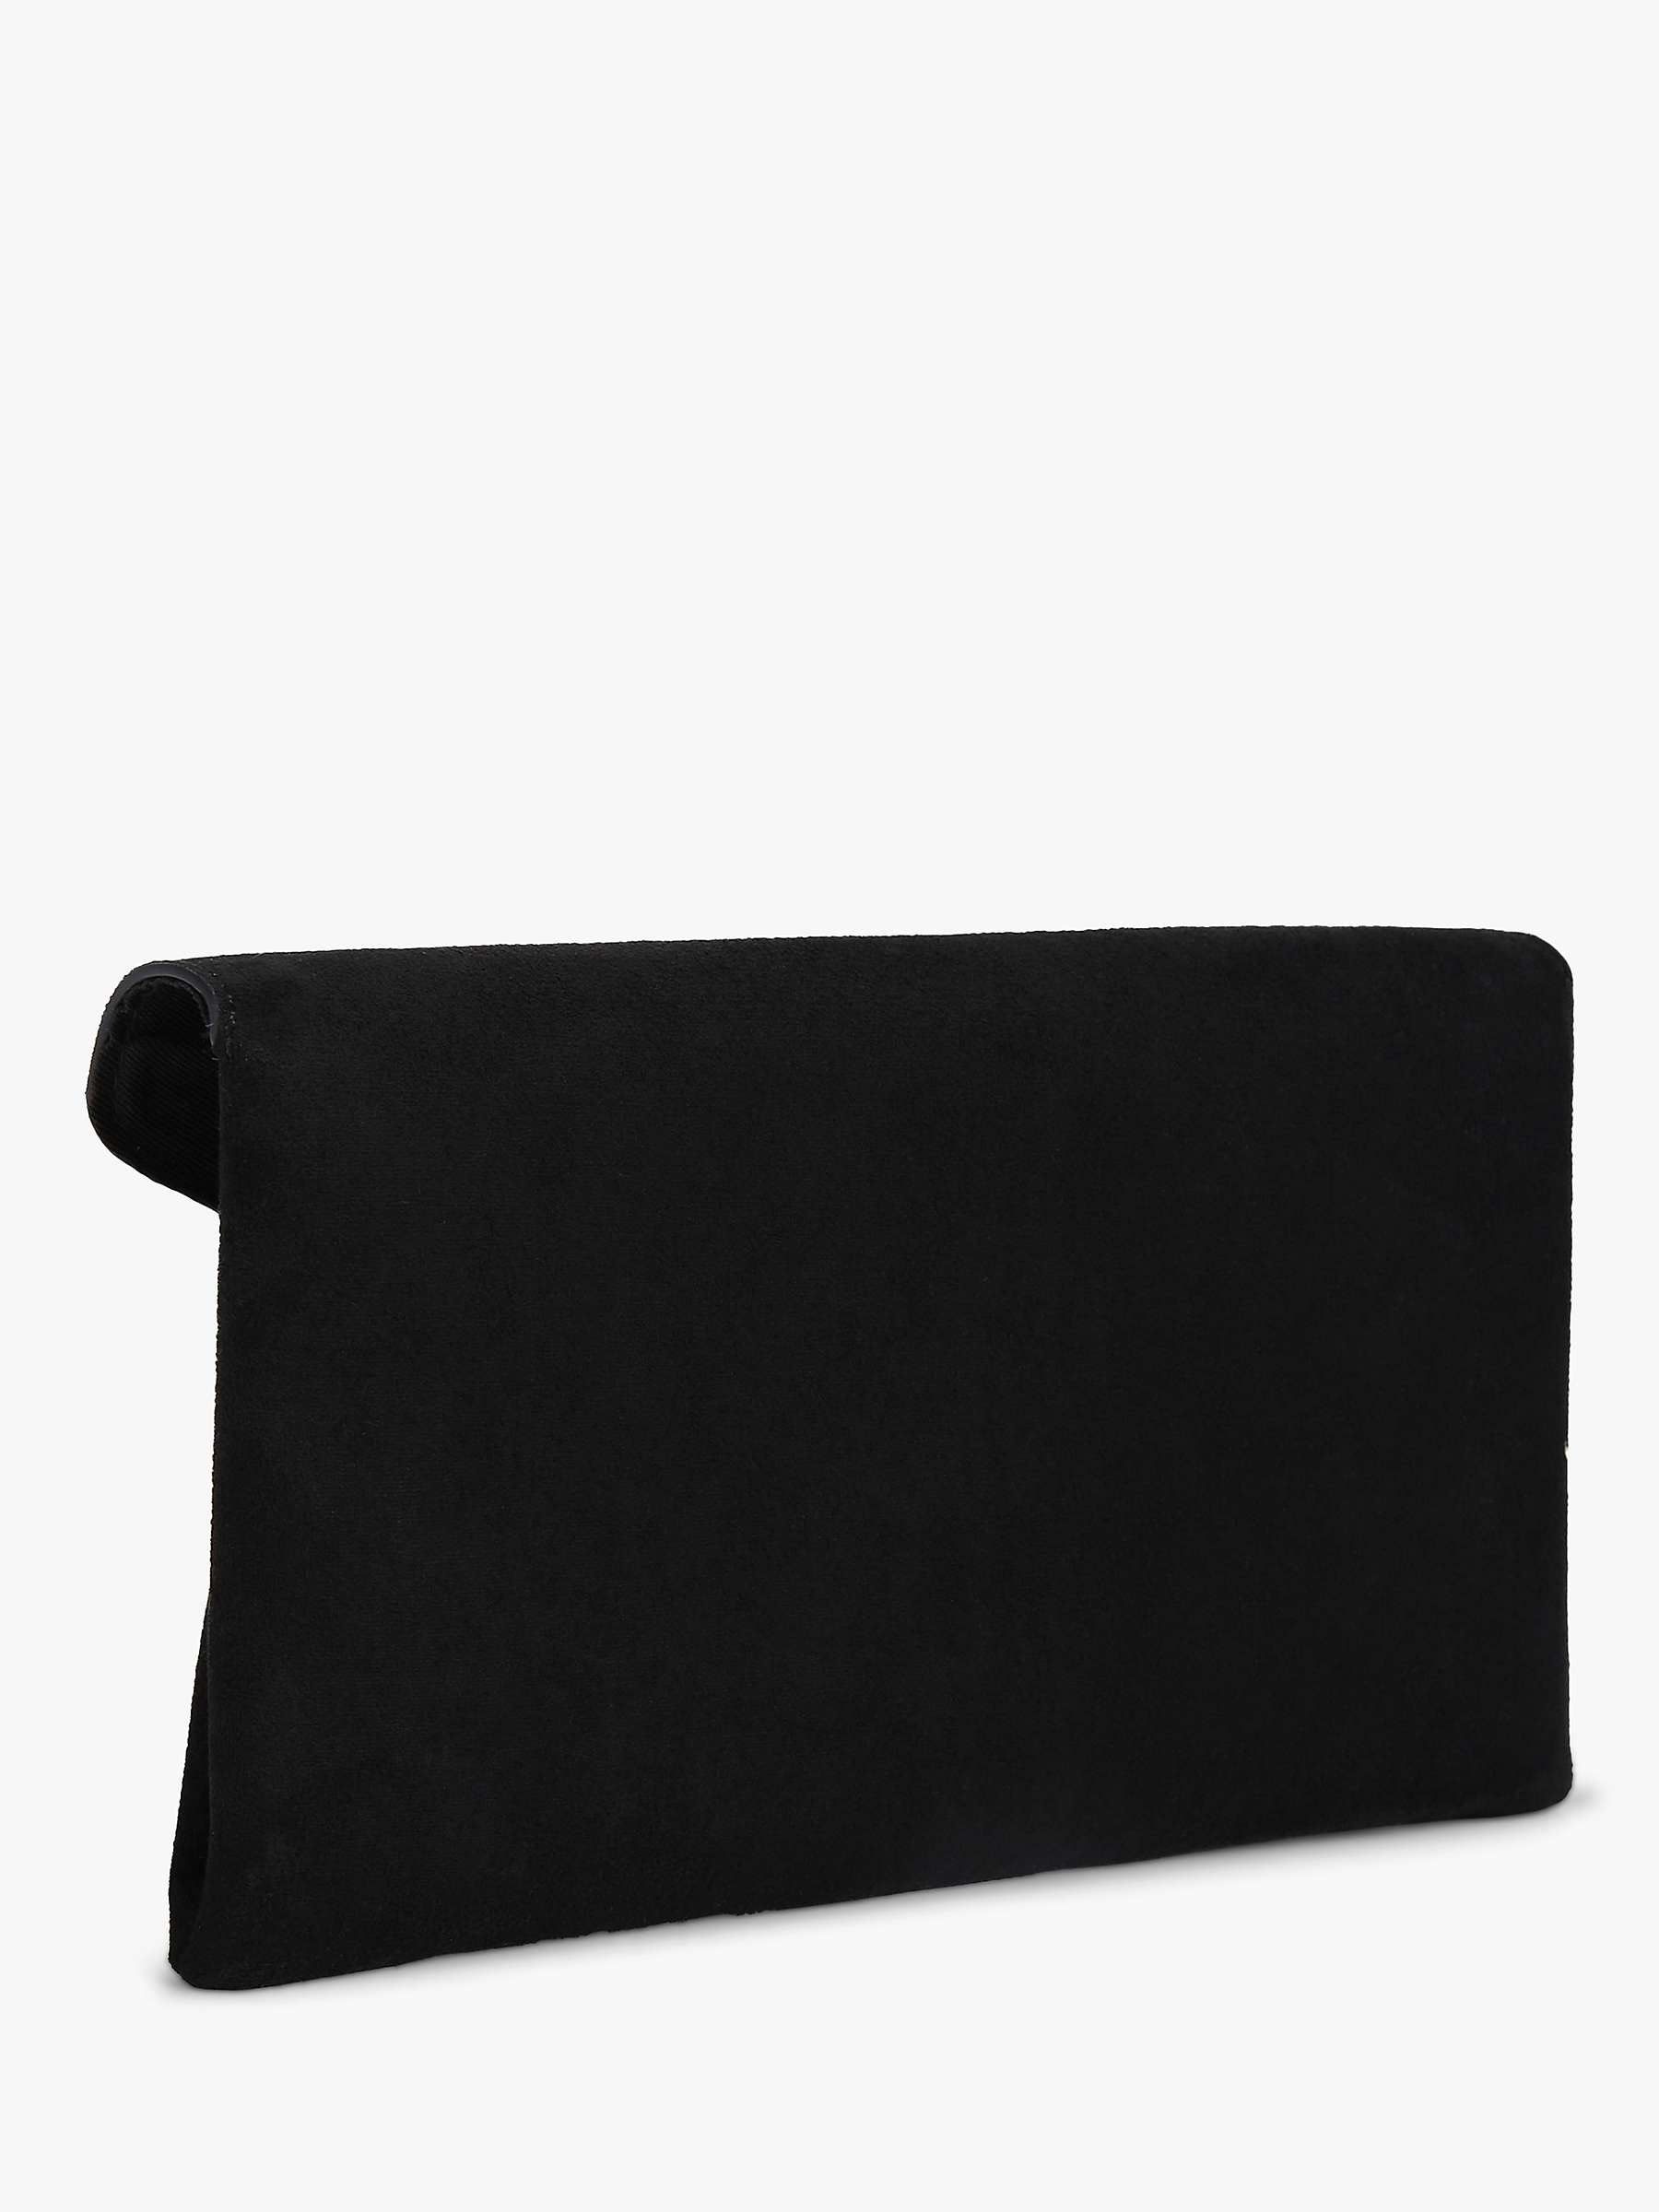 Buy Carvela Megan Suede Envelope Clutch Bag Online at johnlewis.com